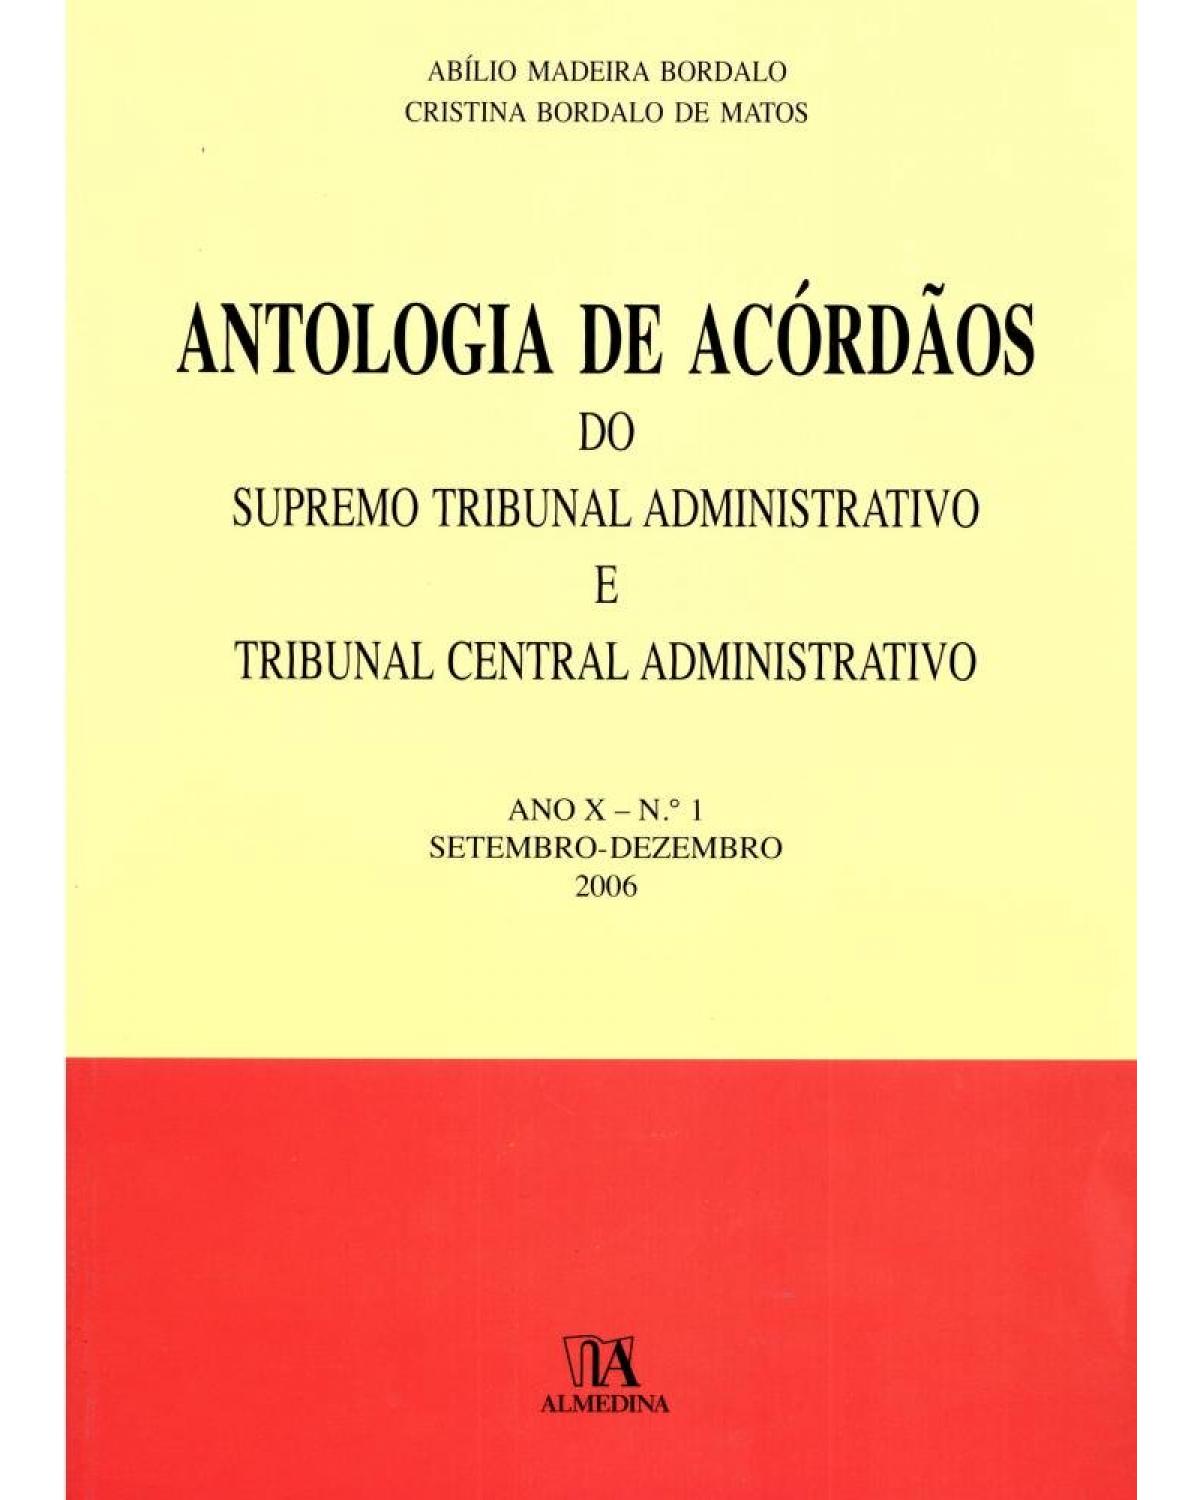 Antologia de acórdãos do supremo tribunal administrativo e tribunal central administrativo - ano X - Setembro-dezembro 2006 - 1ª Edição | 2007